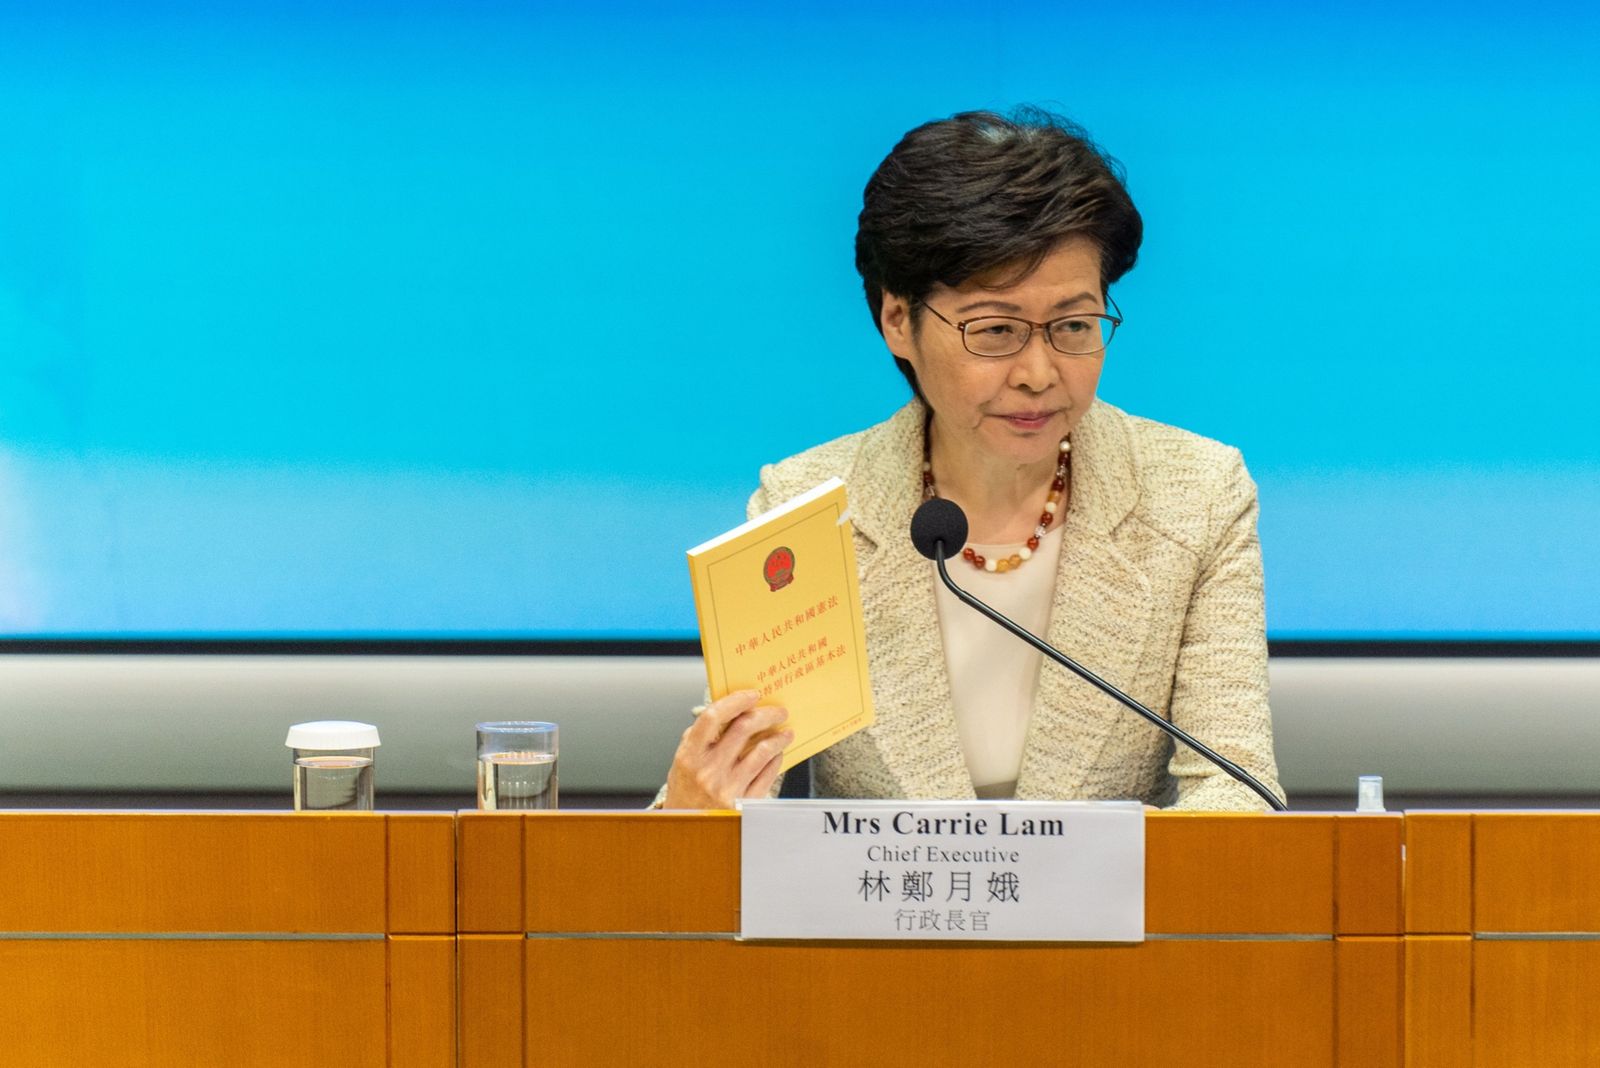 الرئيسة التنفيذية لهونج كونج كاري لام تحمل نسخة من القانون الأساسي خلال مؤتمر صحافي في المدينة - 30 مارس 2021 - Bloomberg